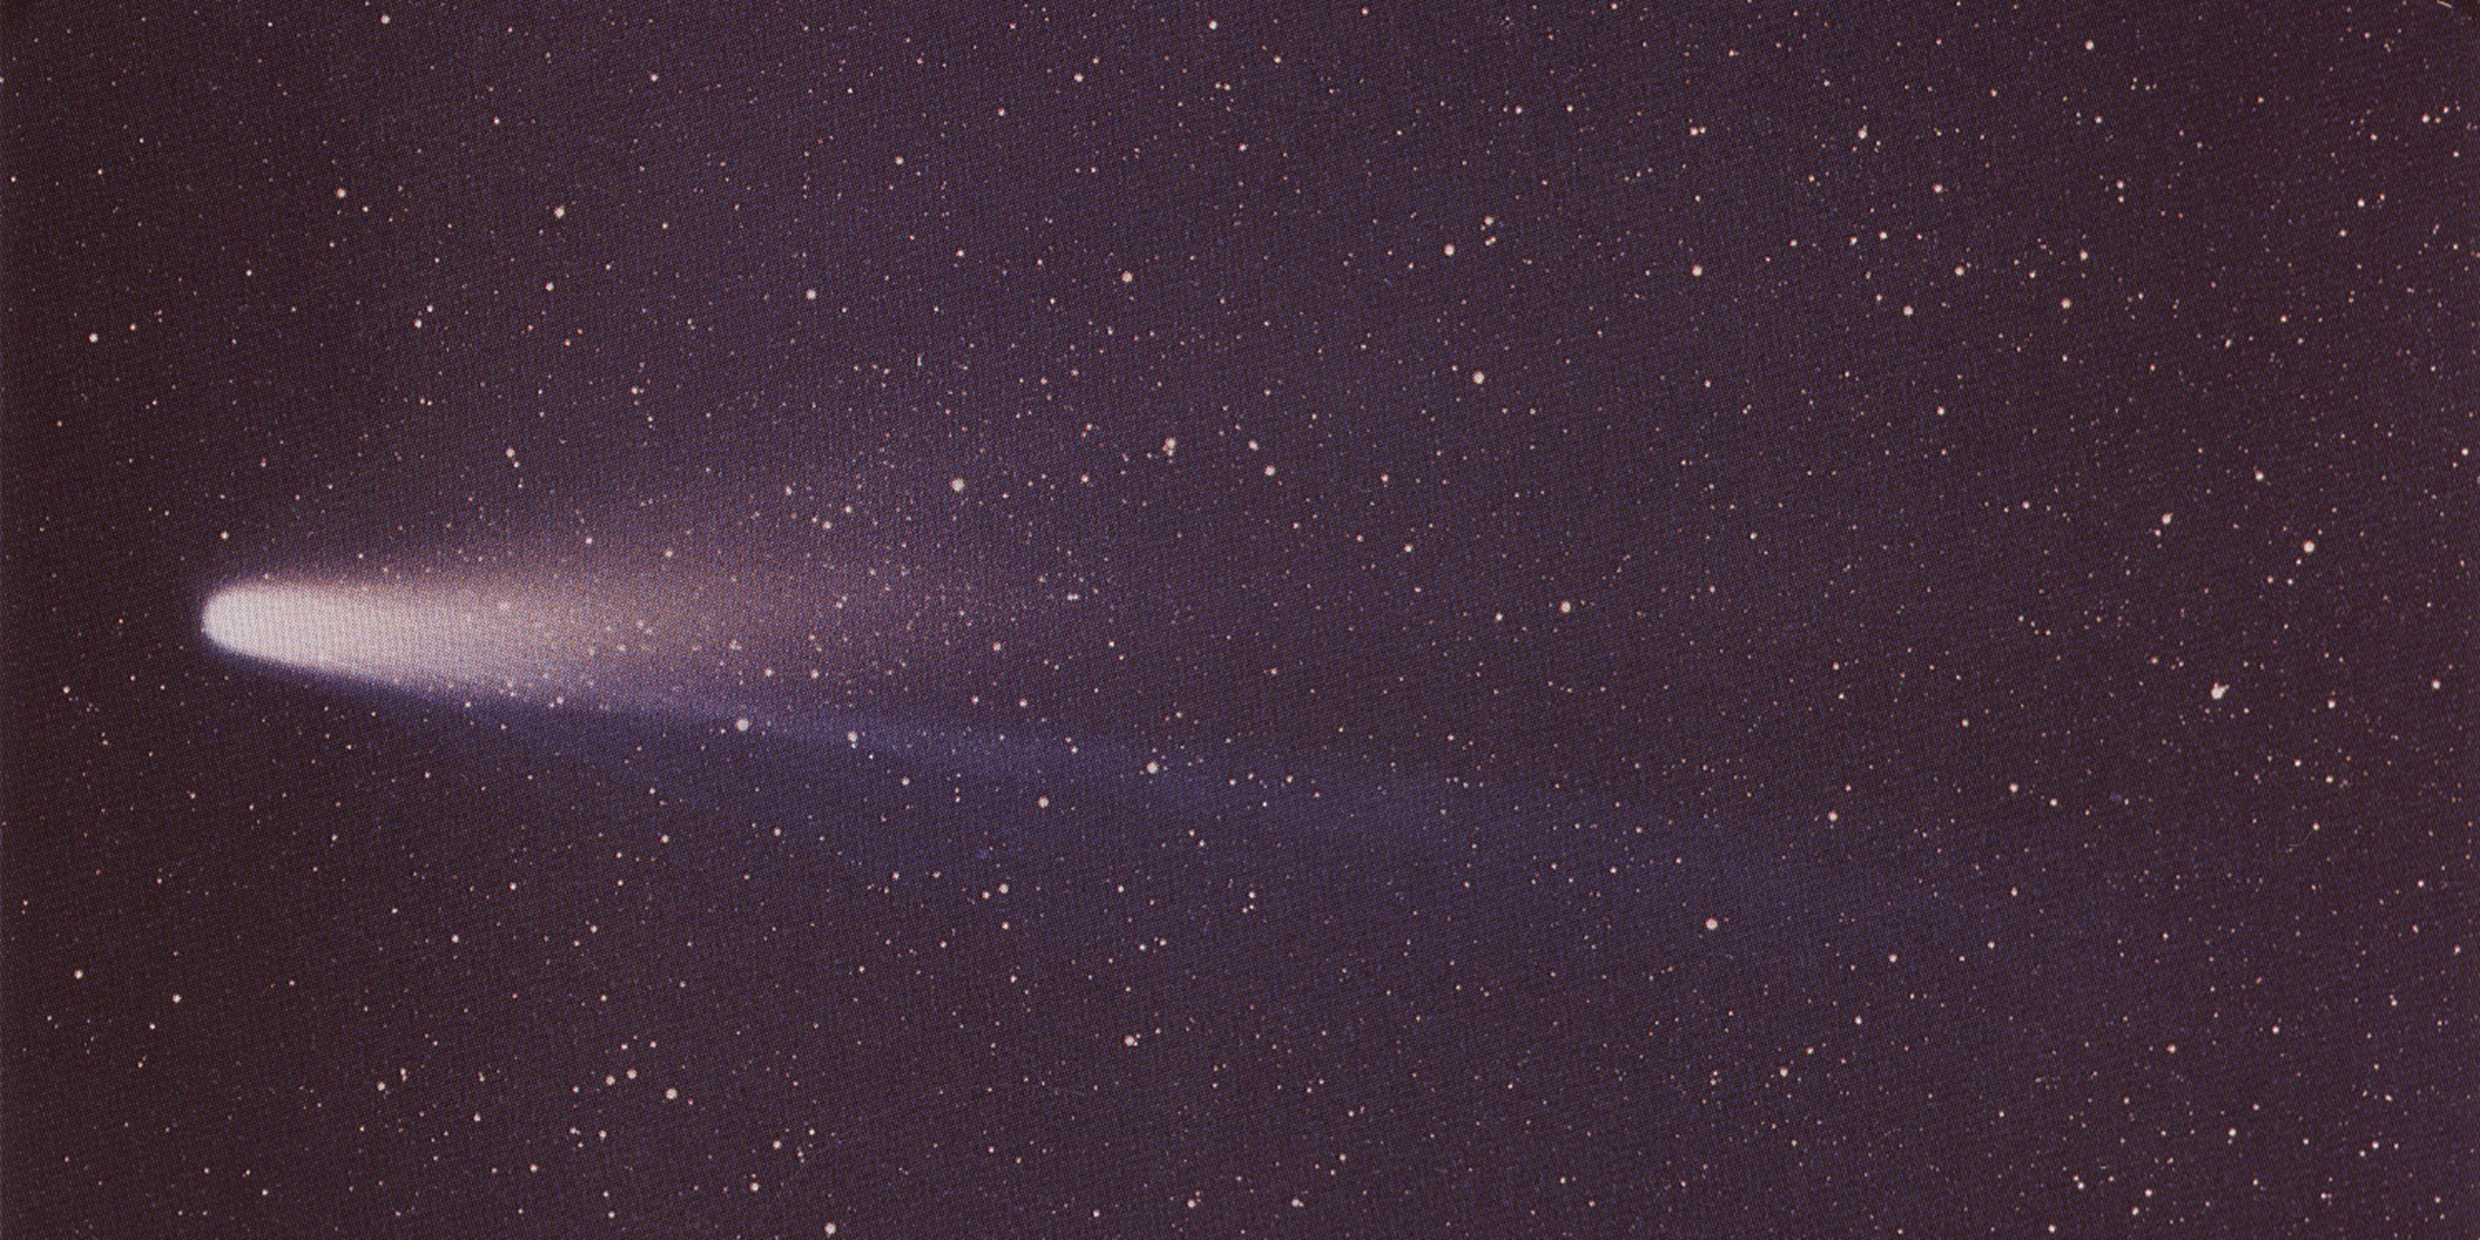 Halley’s Comet: no close encounter